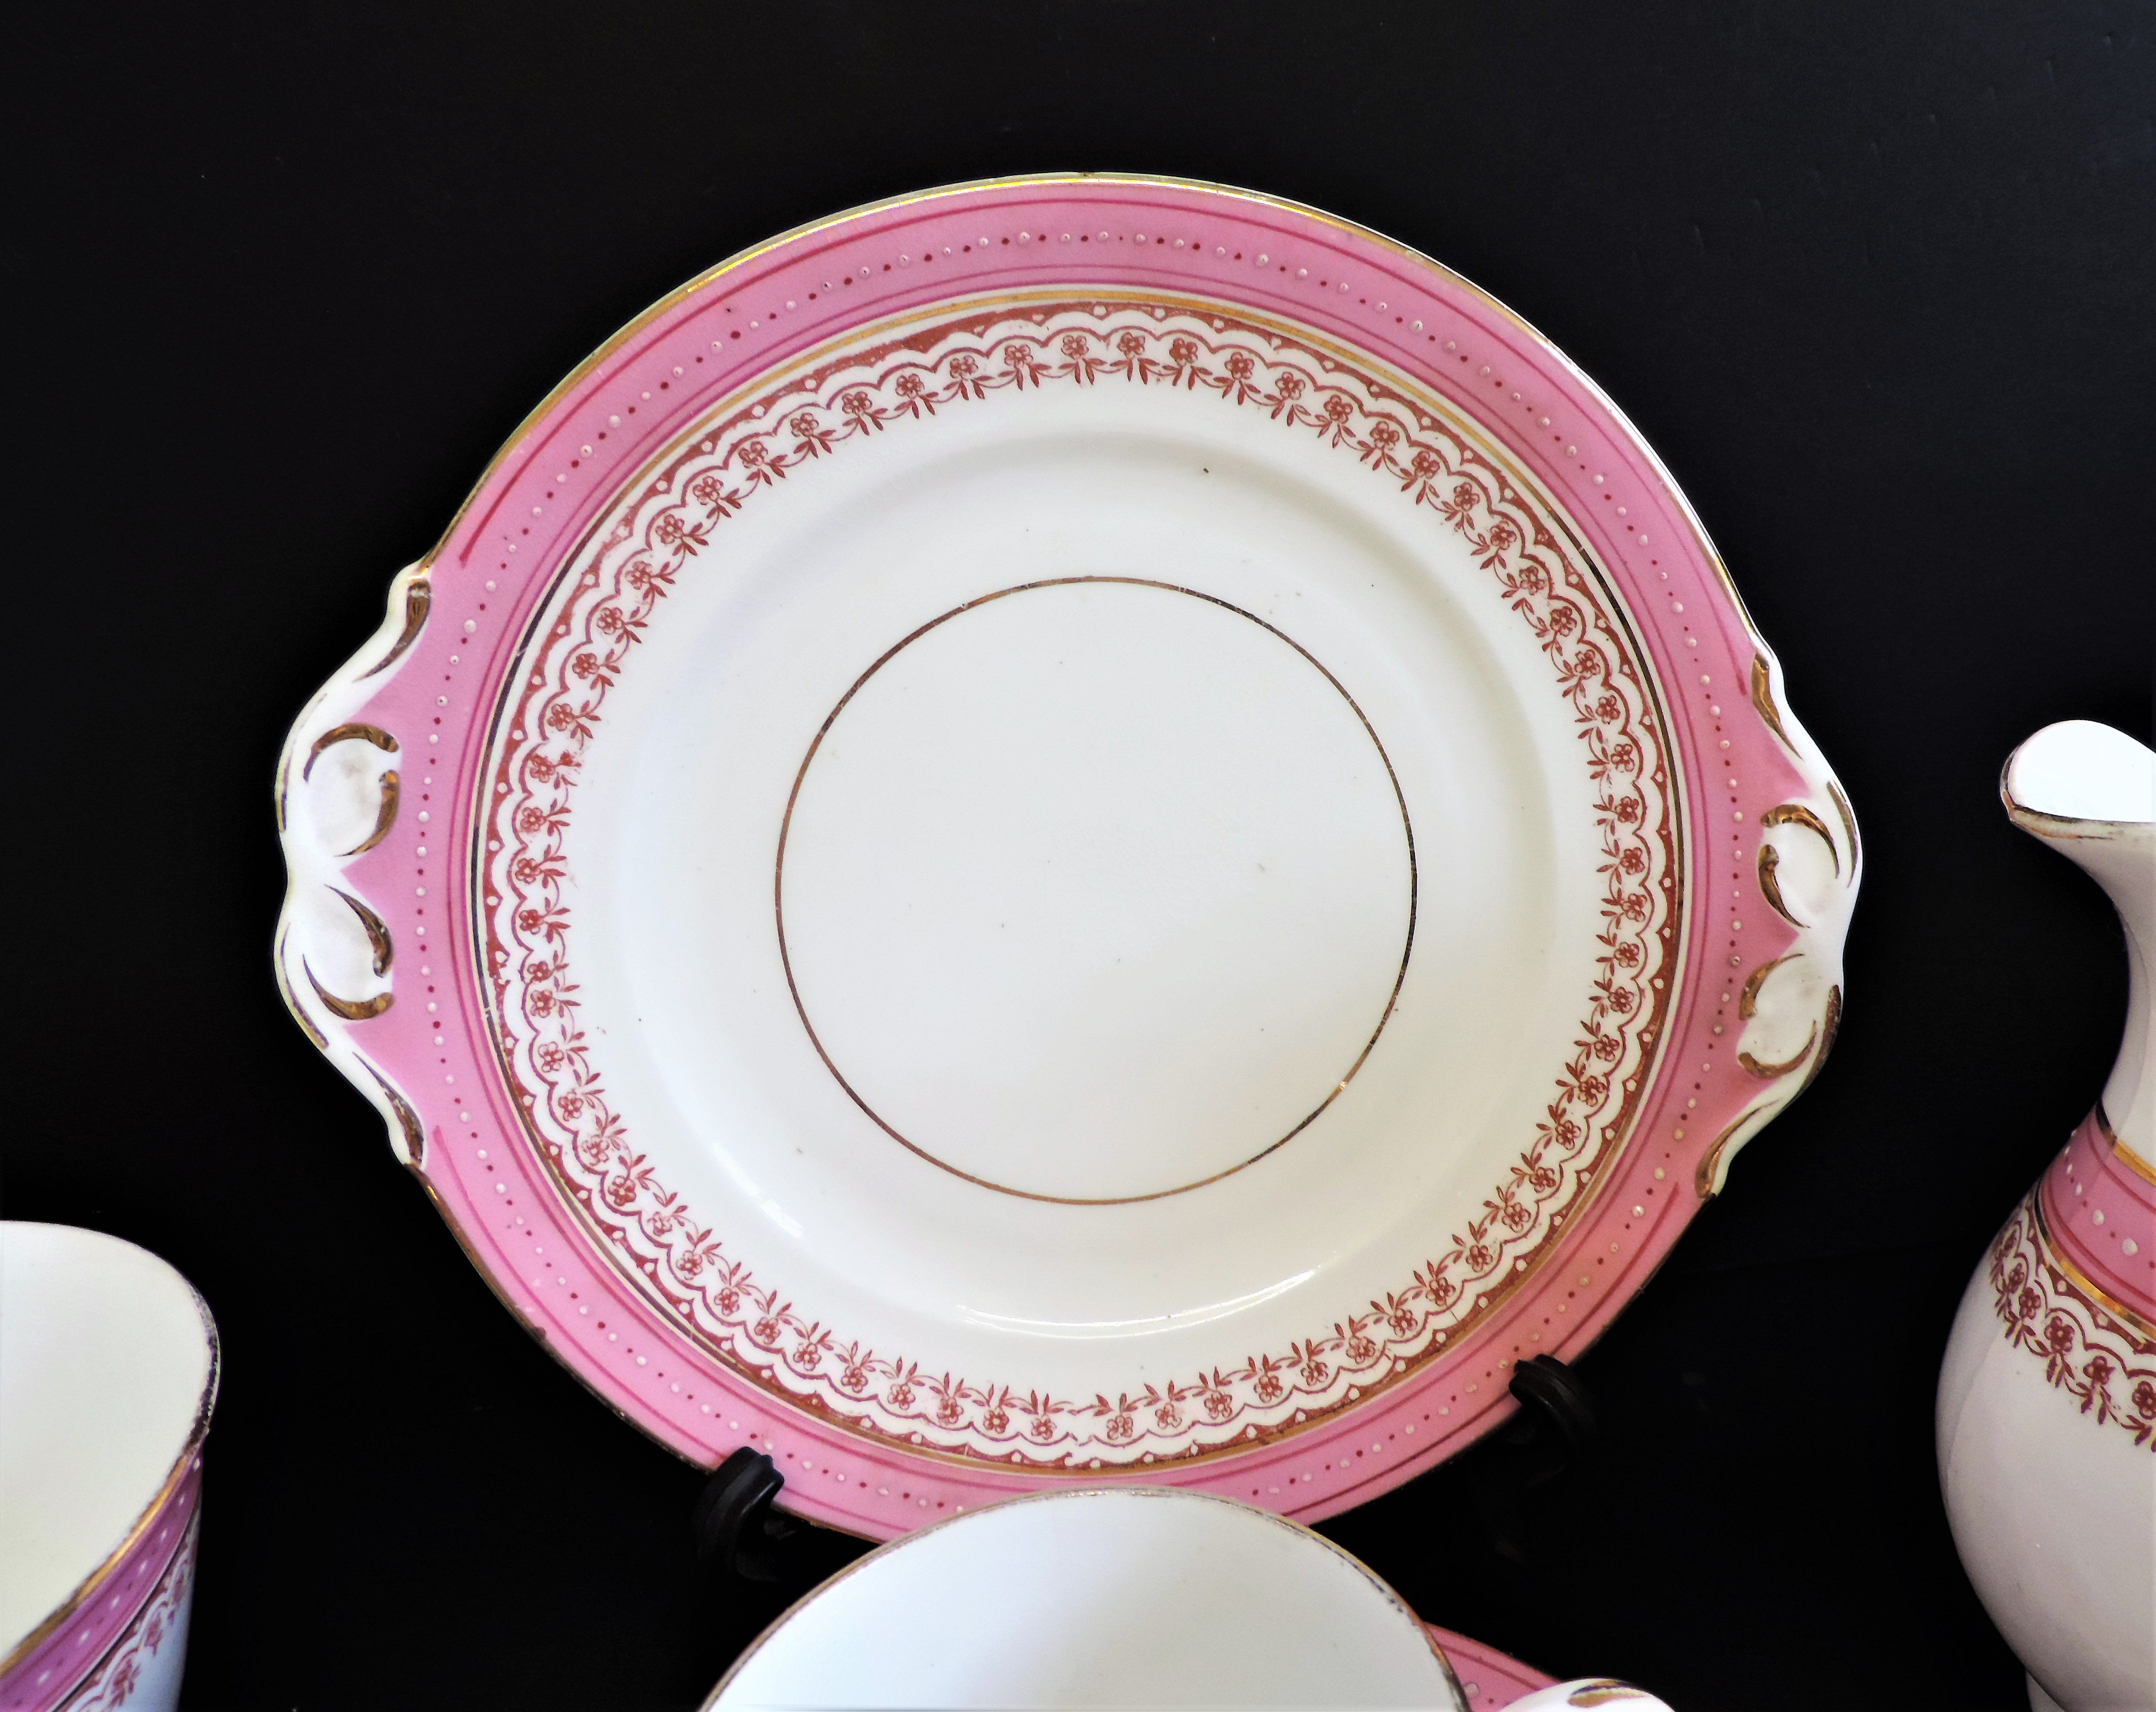 Vintage 19 piece Porcelain Breakfast/Tea Set for 4 People - Image 14 of 24